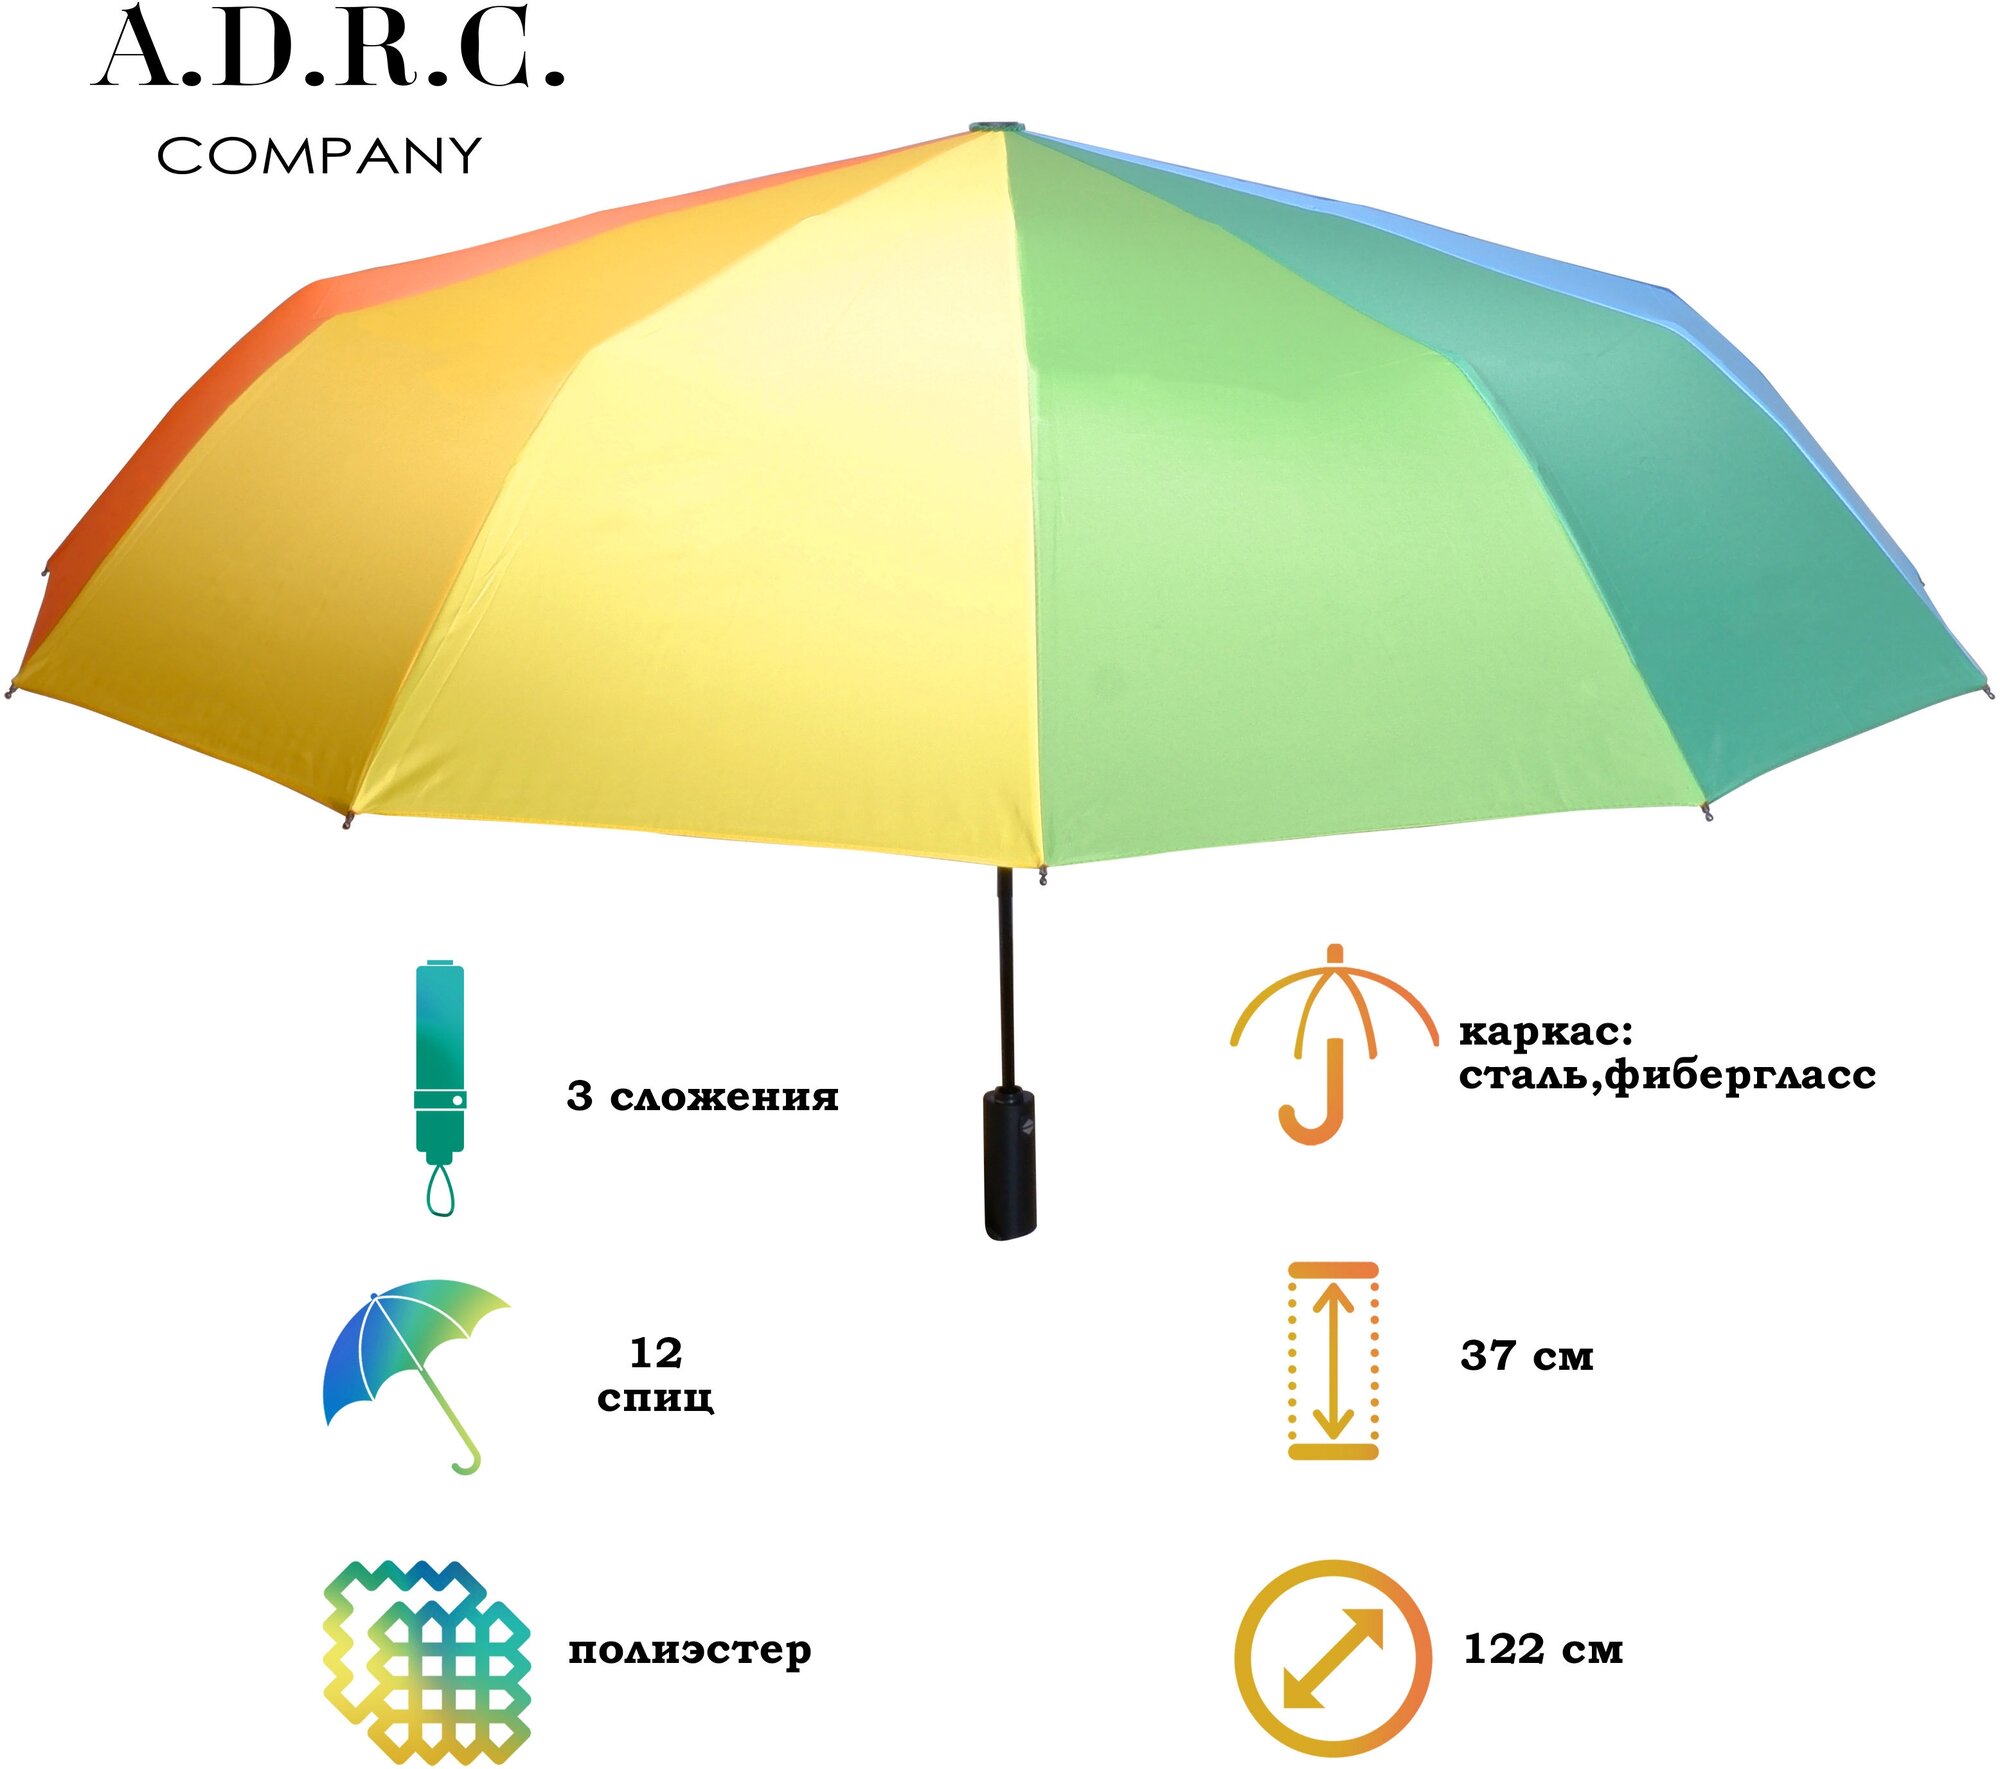 Тестовый образец зонт радуга мини(Картинка)